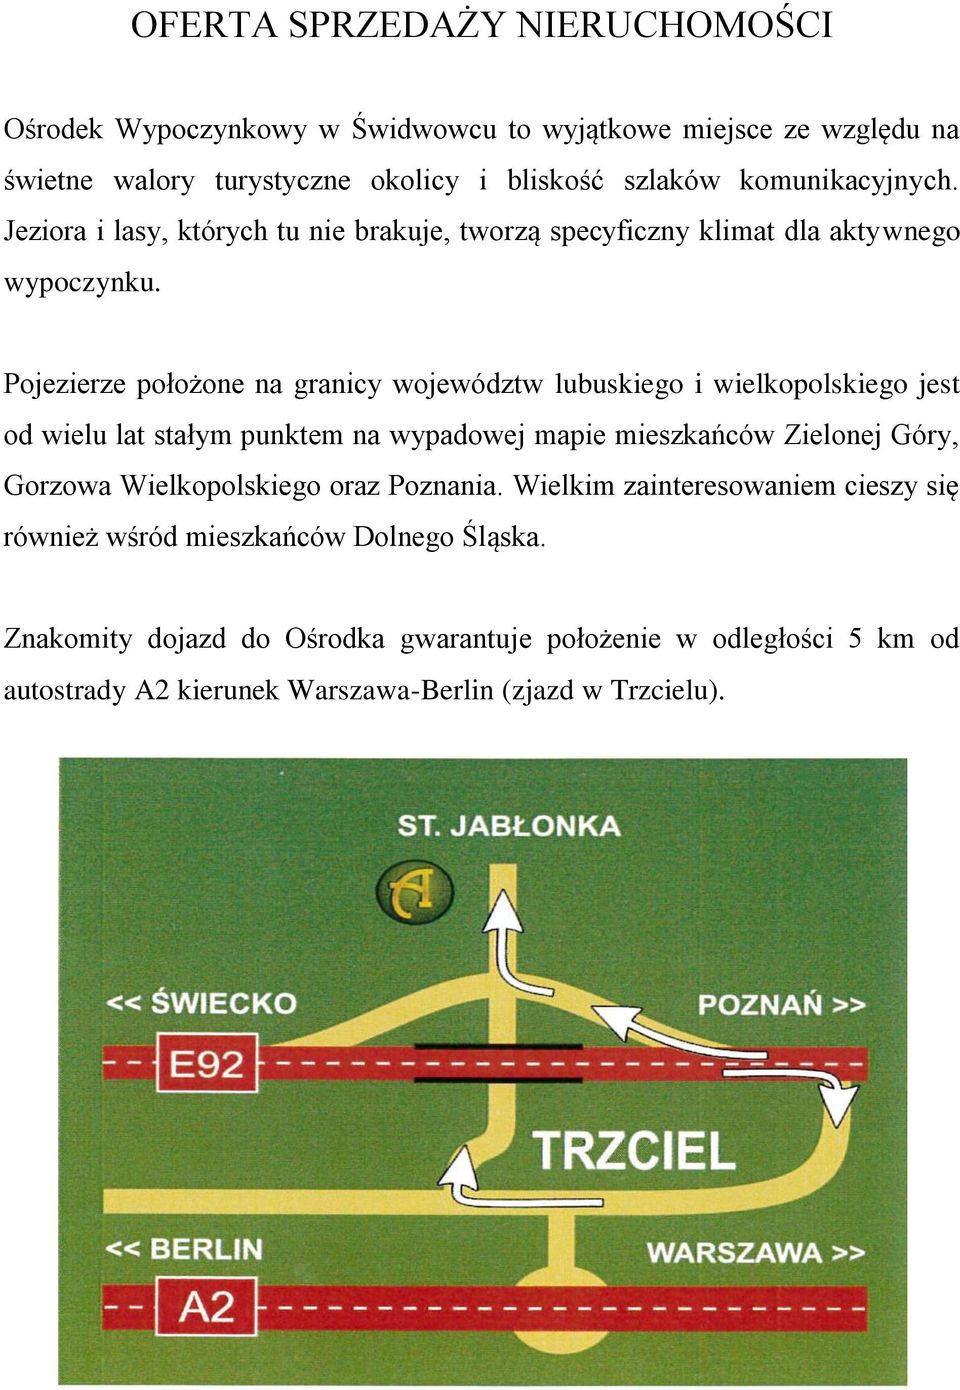 Pojezierze położone na granicy województw lubuskiego i wielkopolskiego jest od wielu lat stałym punktem na wypadowej mapie mieszkańców Zielonej Góry, Gorzowa